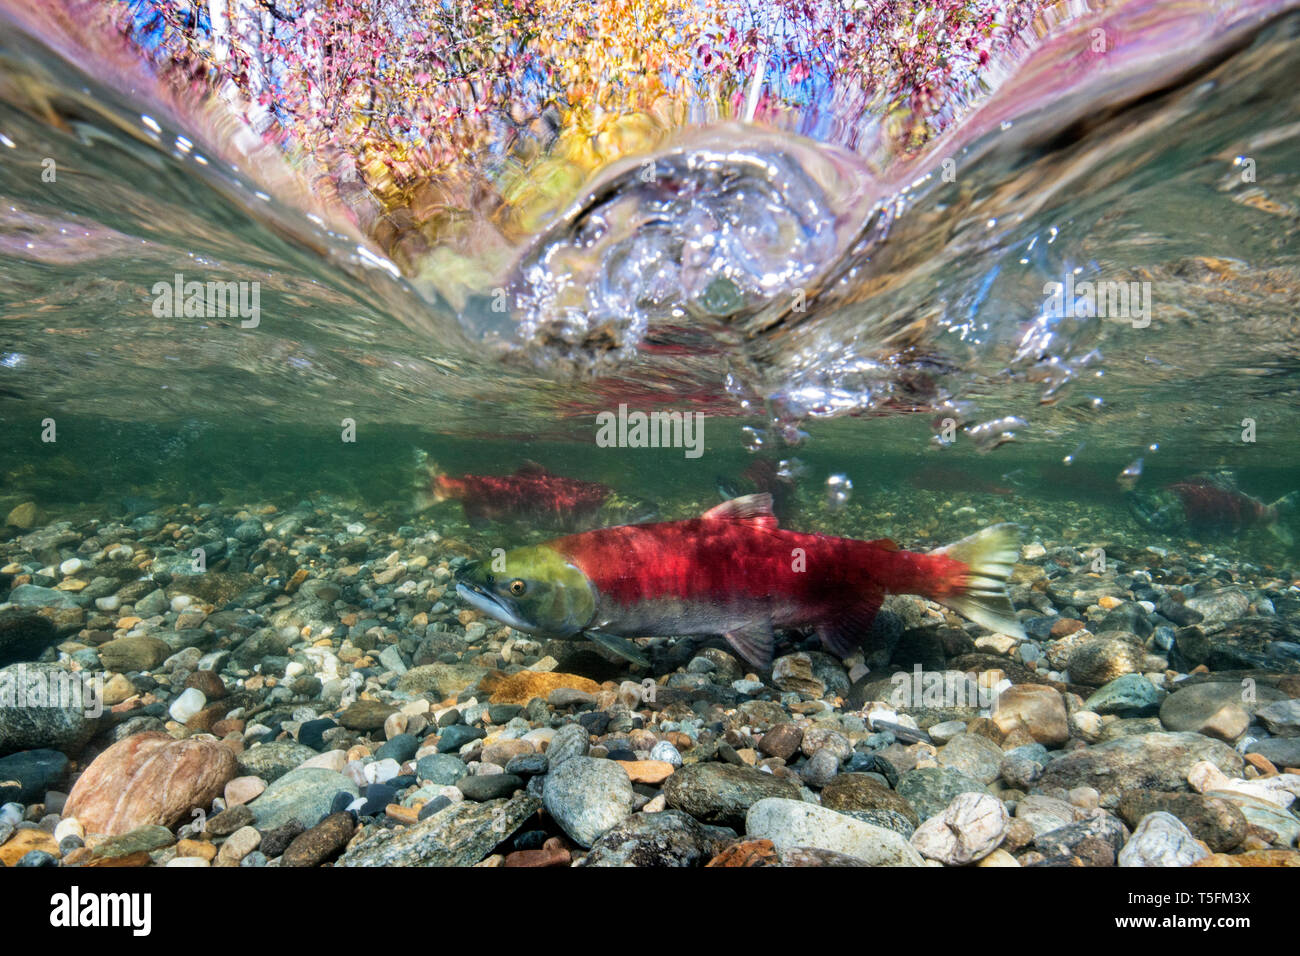 California, British Columbia, Adams River, Il Salmone Sockeye, Oncorhynchus nerka, sopra-sotto l'immagine Foto Stock